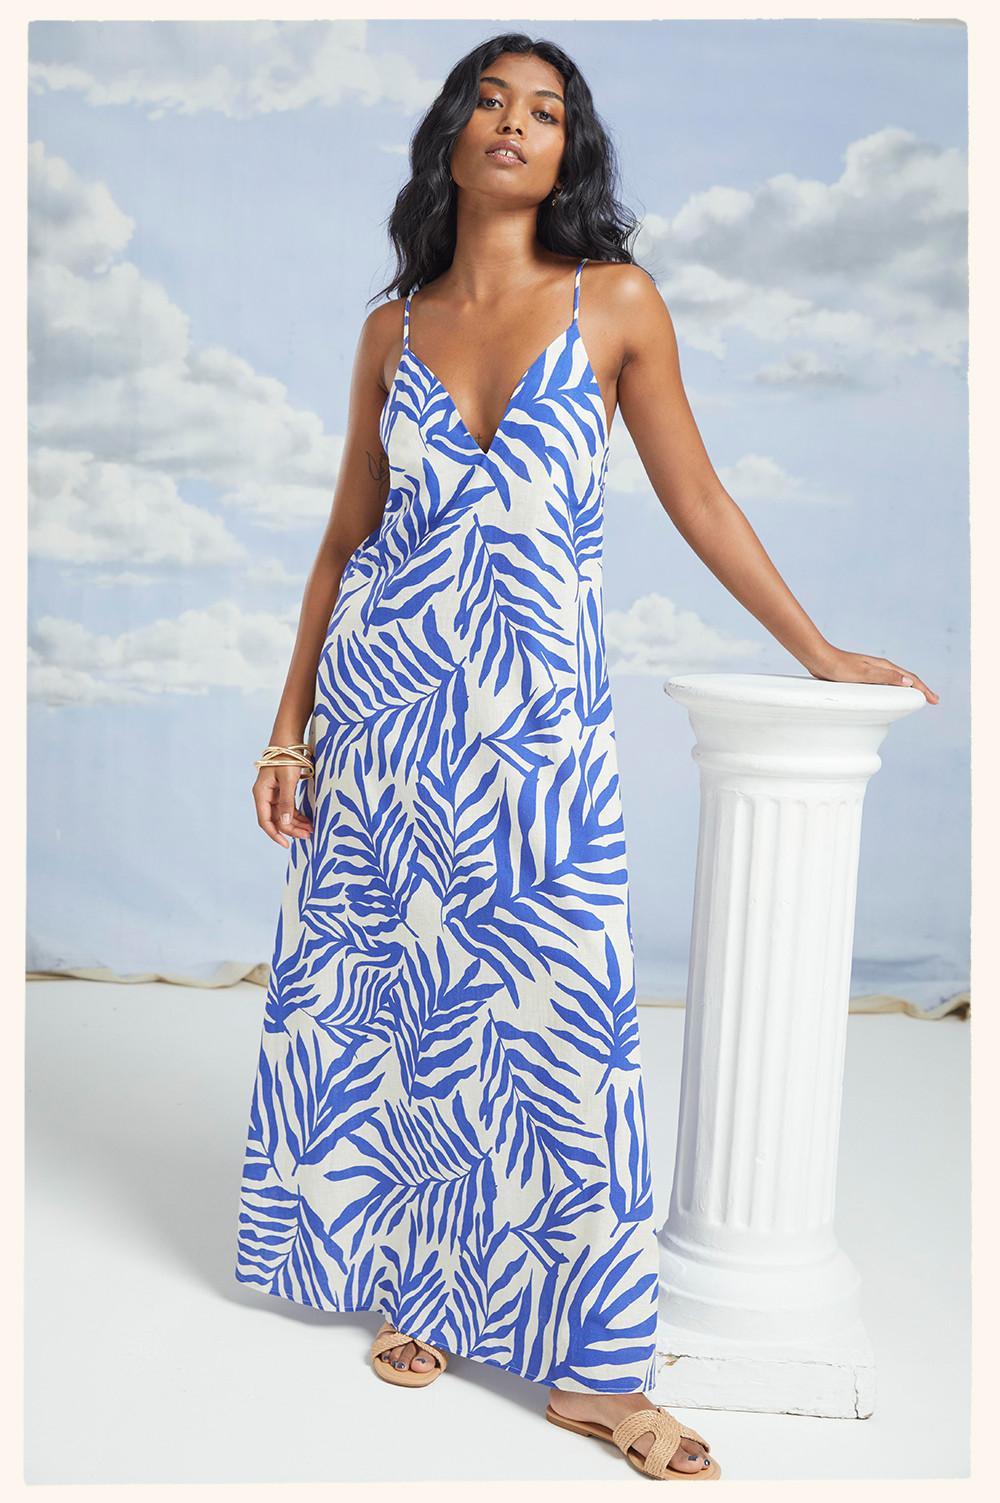 Model in blue/white print dress